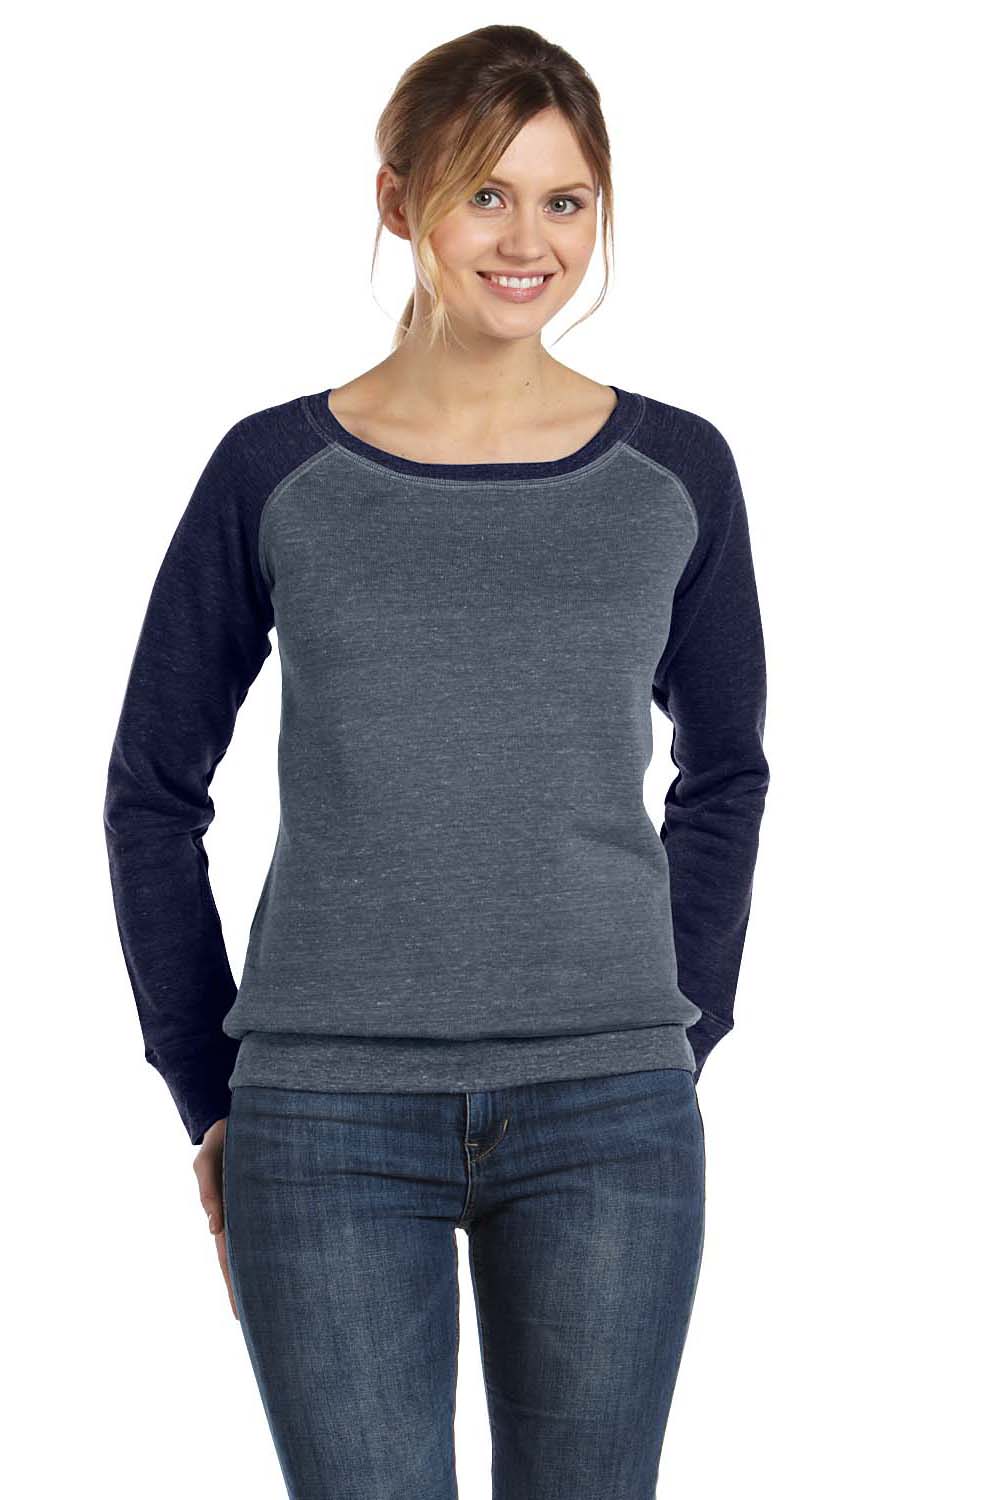 Bella + Canvas 7501 Womens Sponge Fleece Wide Neck Sweatshirt Heather Deep Grey/Navy Blue Front